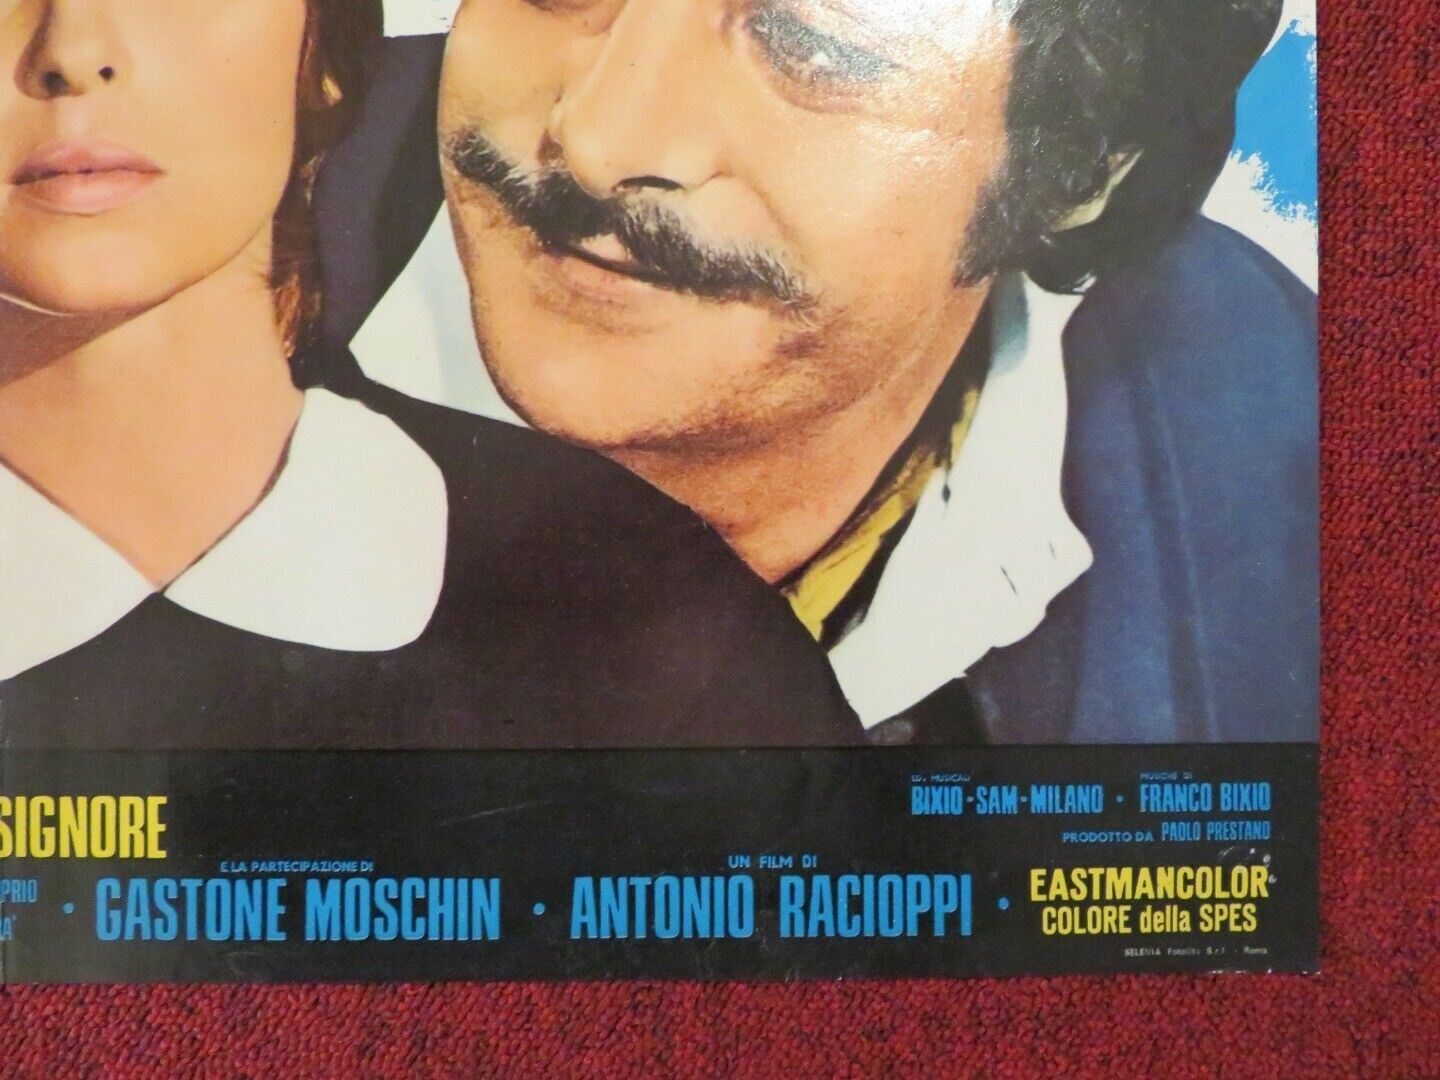 "STORIA D'AMORE E DI... MONARCHIA  - C ITALIAN FOTOBUSTA POSTER 1971